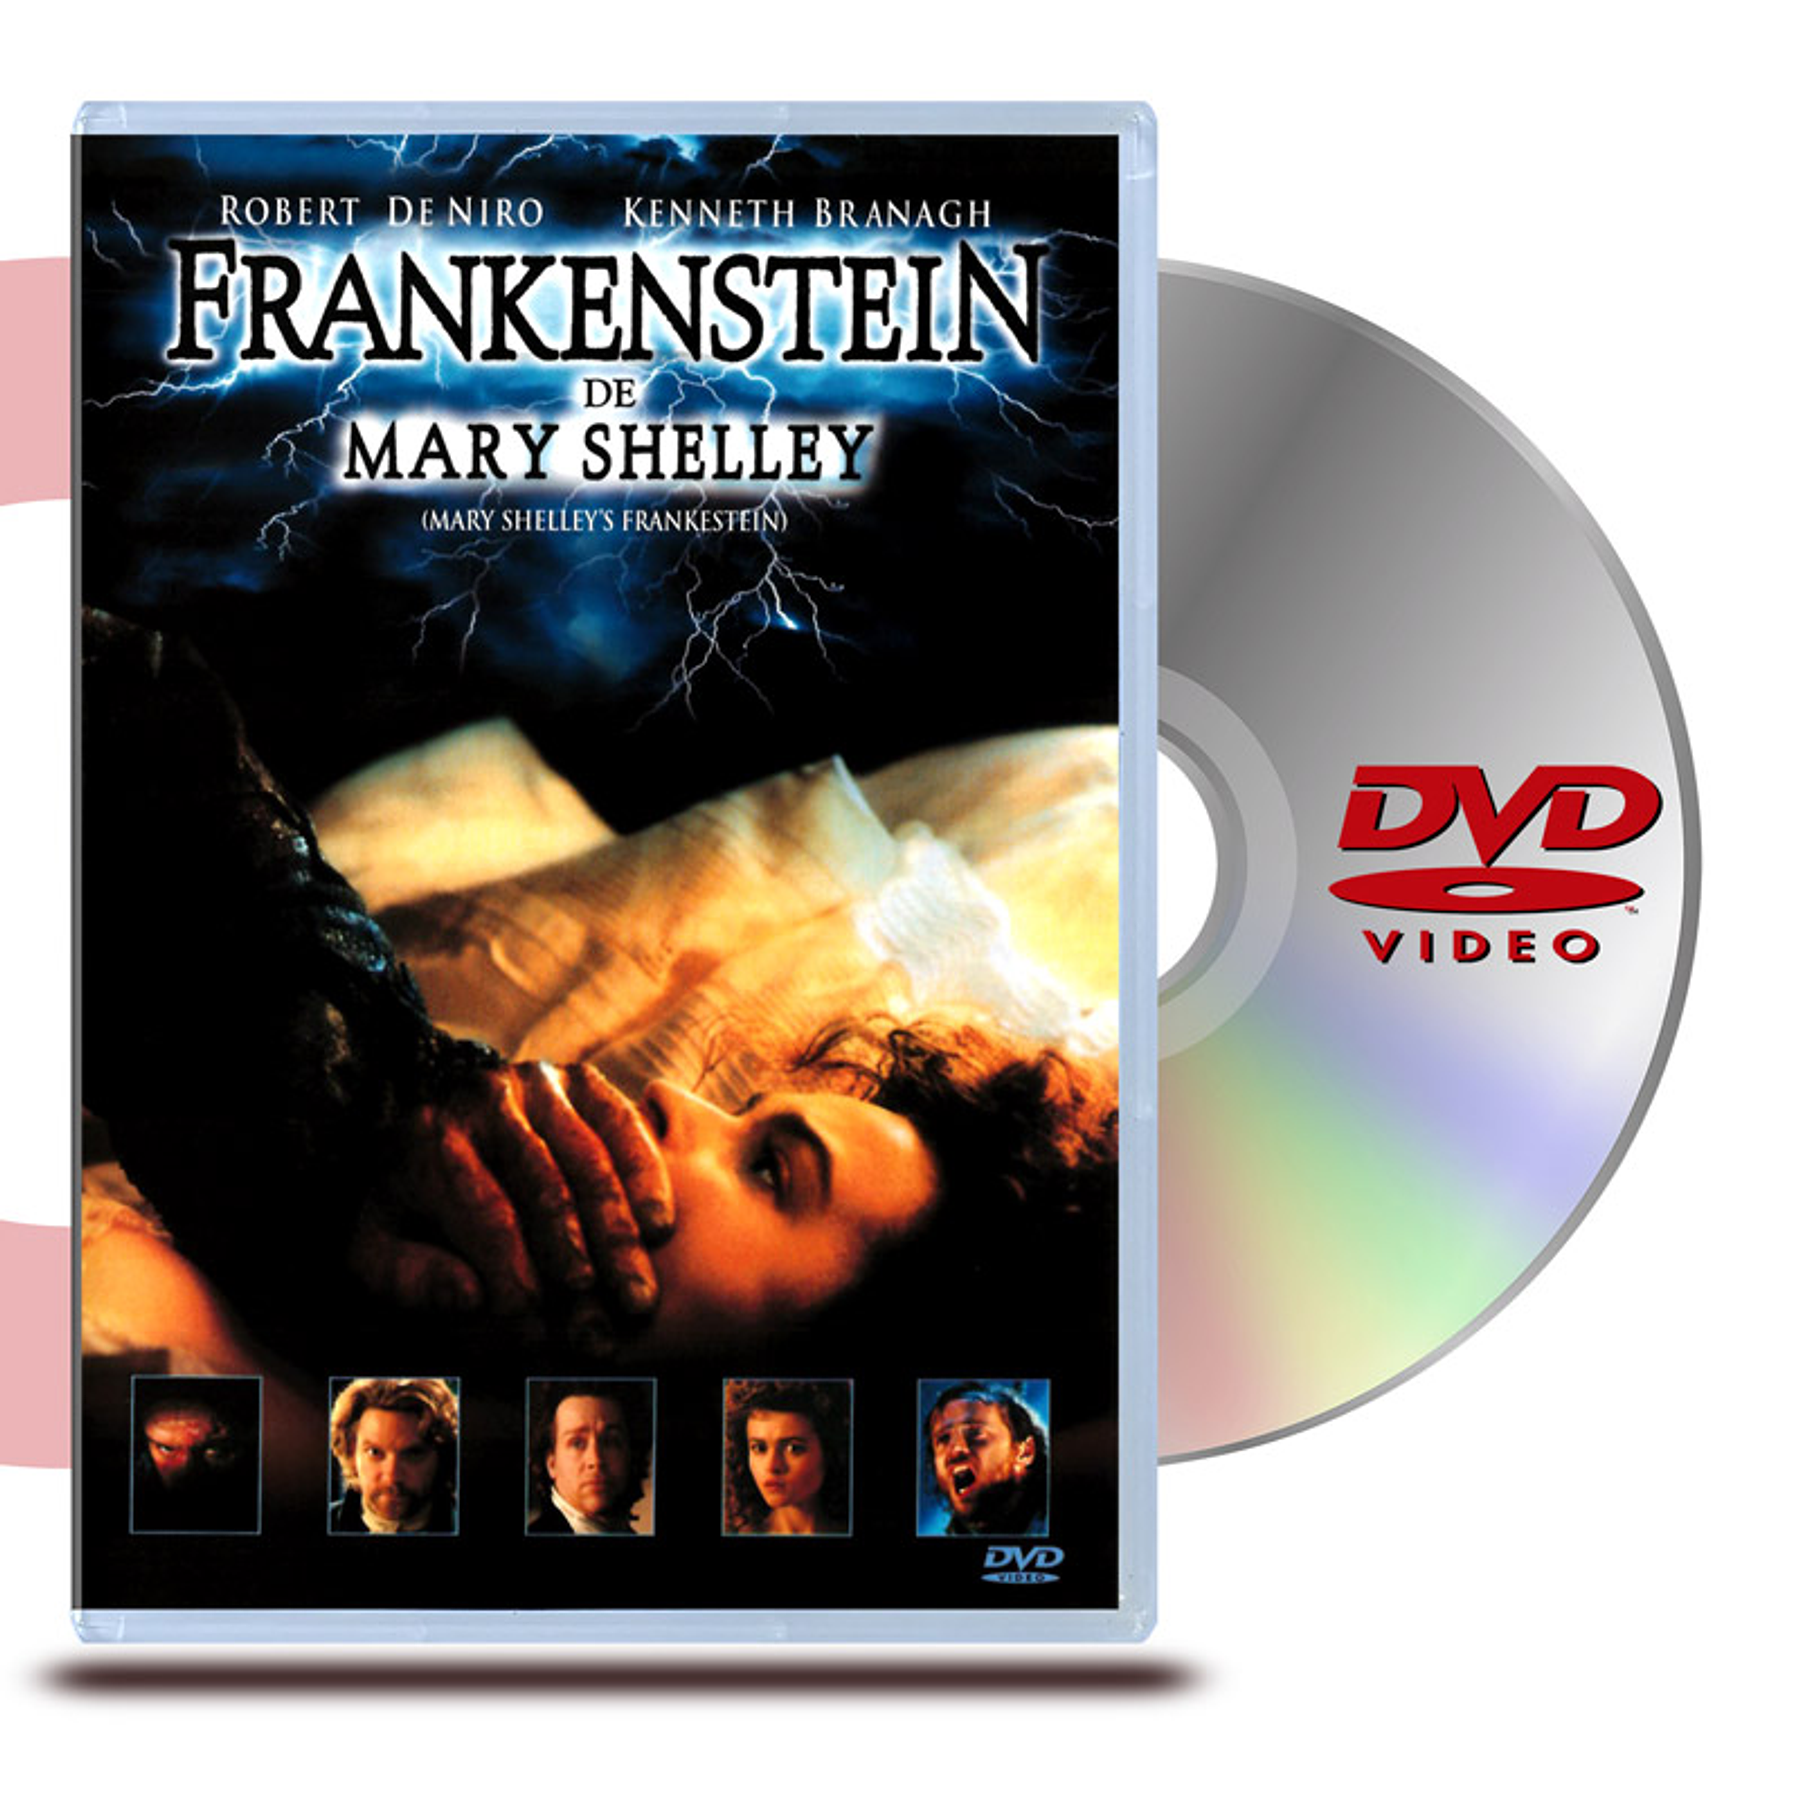 DVD FRANKENSTEIN